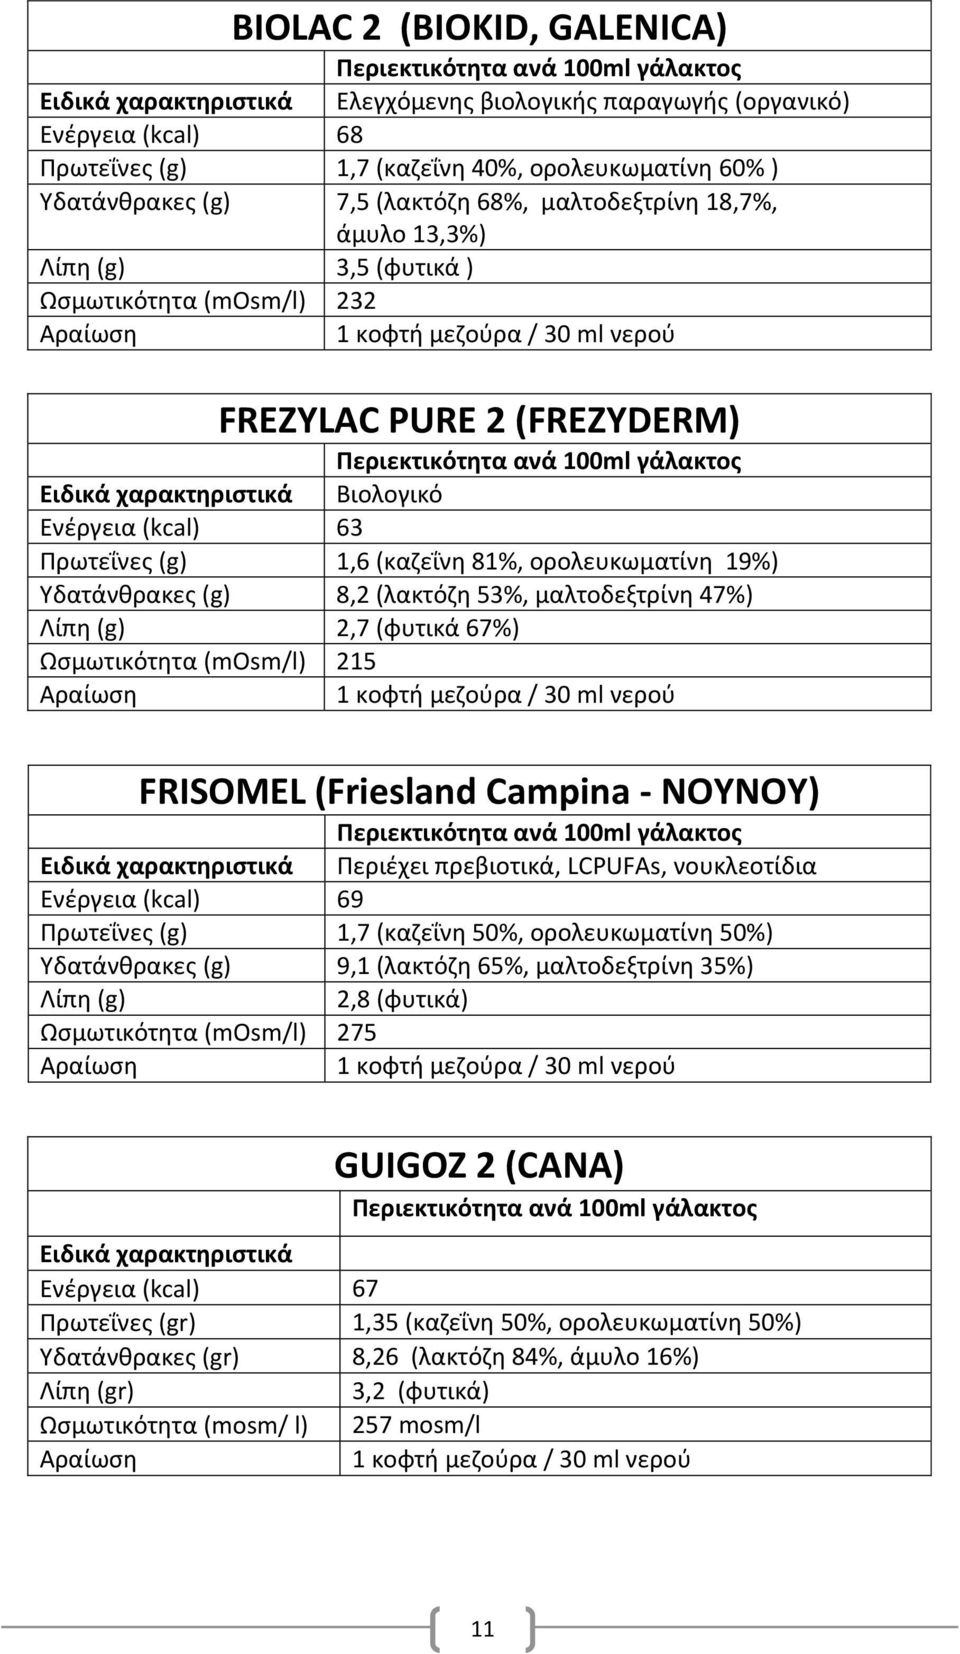 μαλτοδεξτρίνθ 47%) 2,7 (φυτικά 67%) Ωςμωτικότθτα (mosm/l) 215 FRISOMEL (Friesland Campina - NOYNOY) Περιζχει πρεβιοτικά, LCPUFAs, νουκλεοτίδια Ενζργεια (kcal) 69 Πρωτεΐνεσ (g) 1,7 (καηεΐνθ 50%,